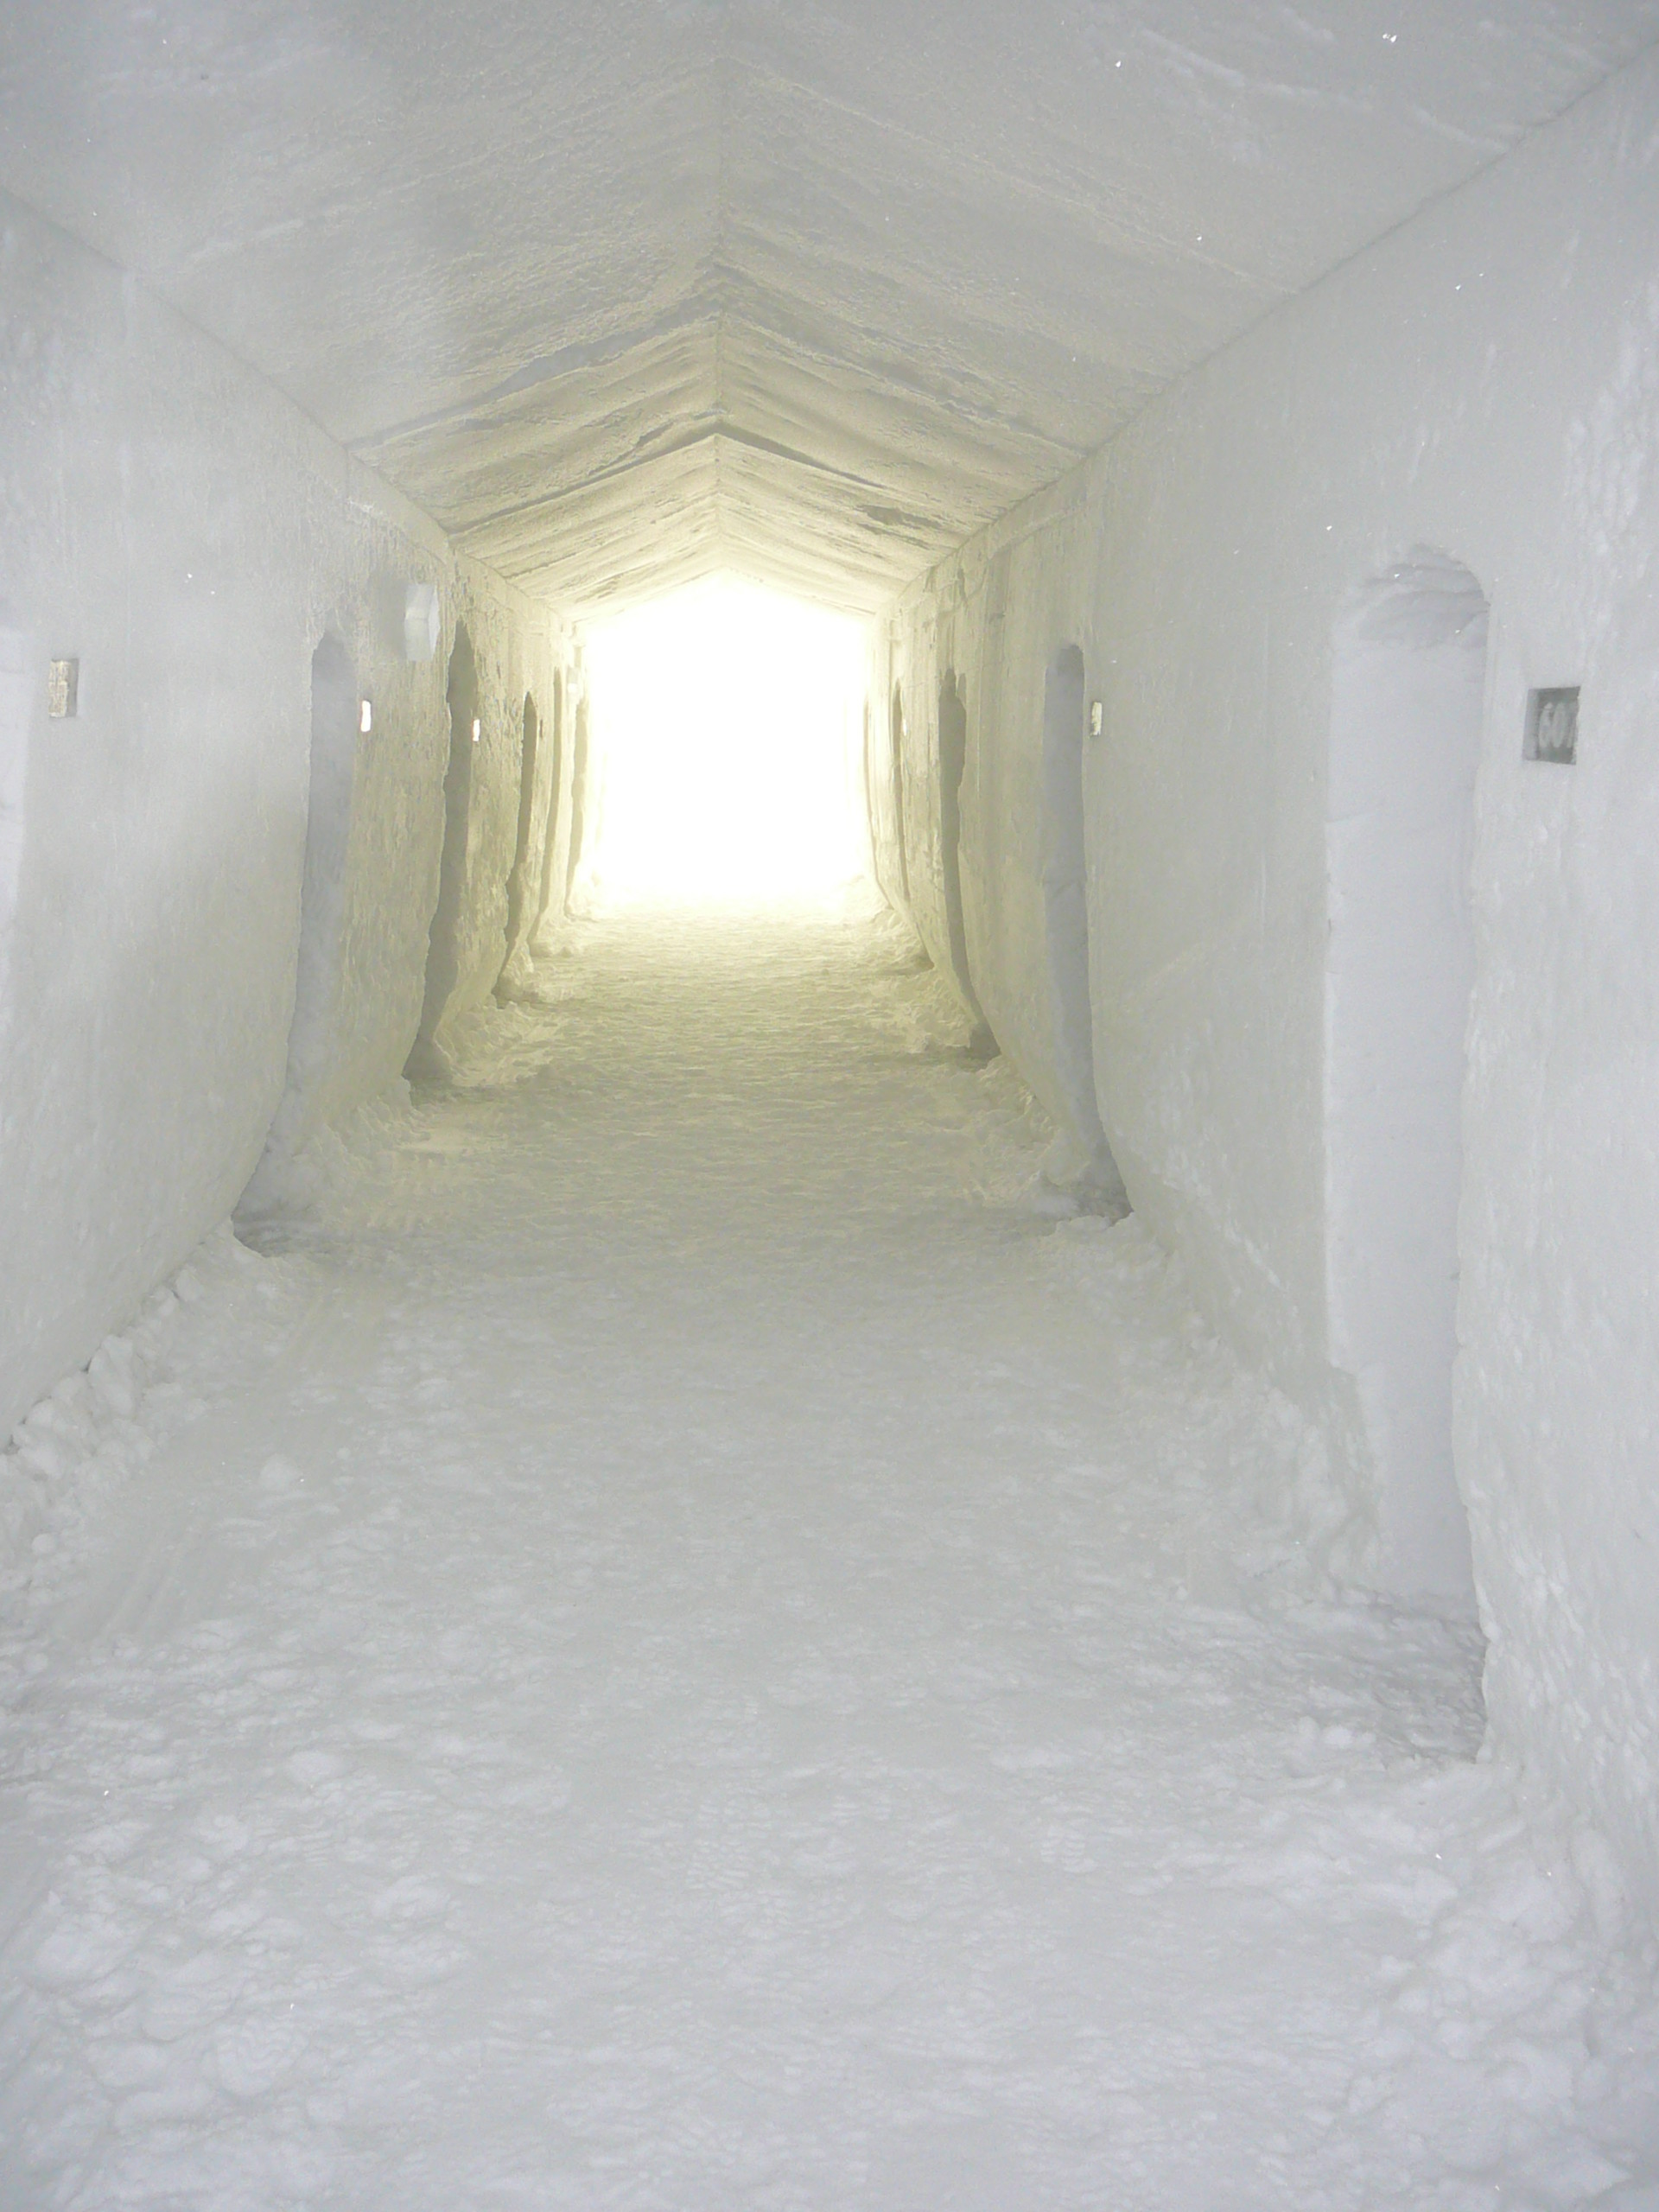 Isig korridor på på ishotellet i Jukkasjärvi